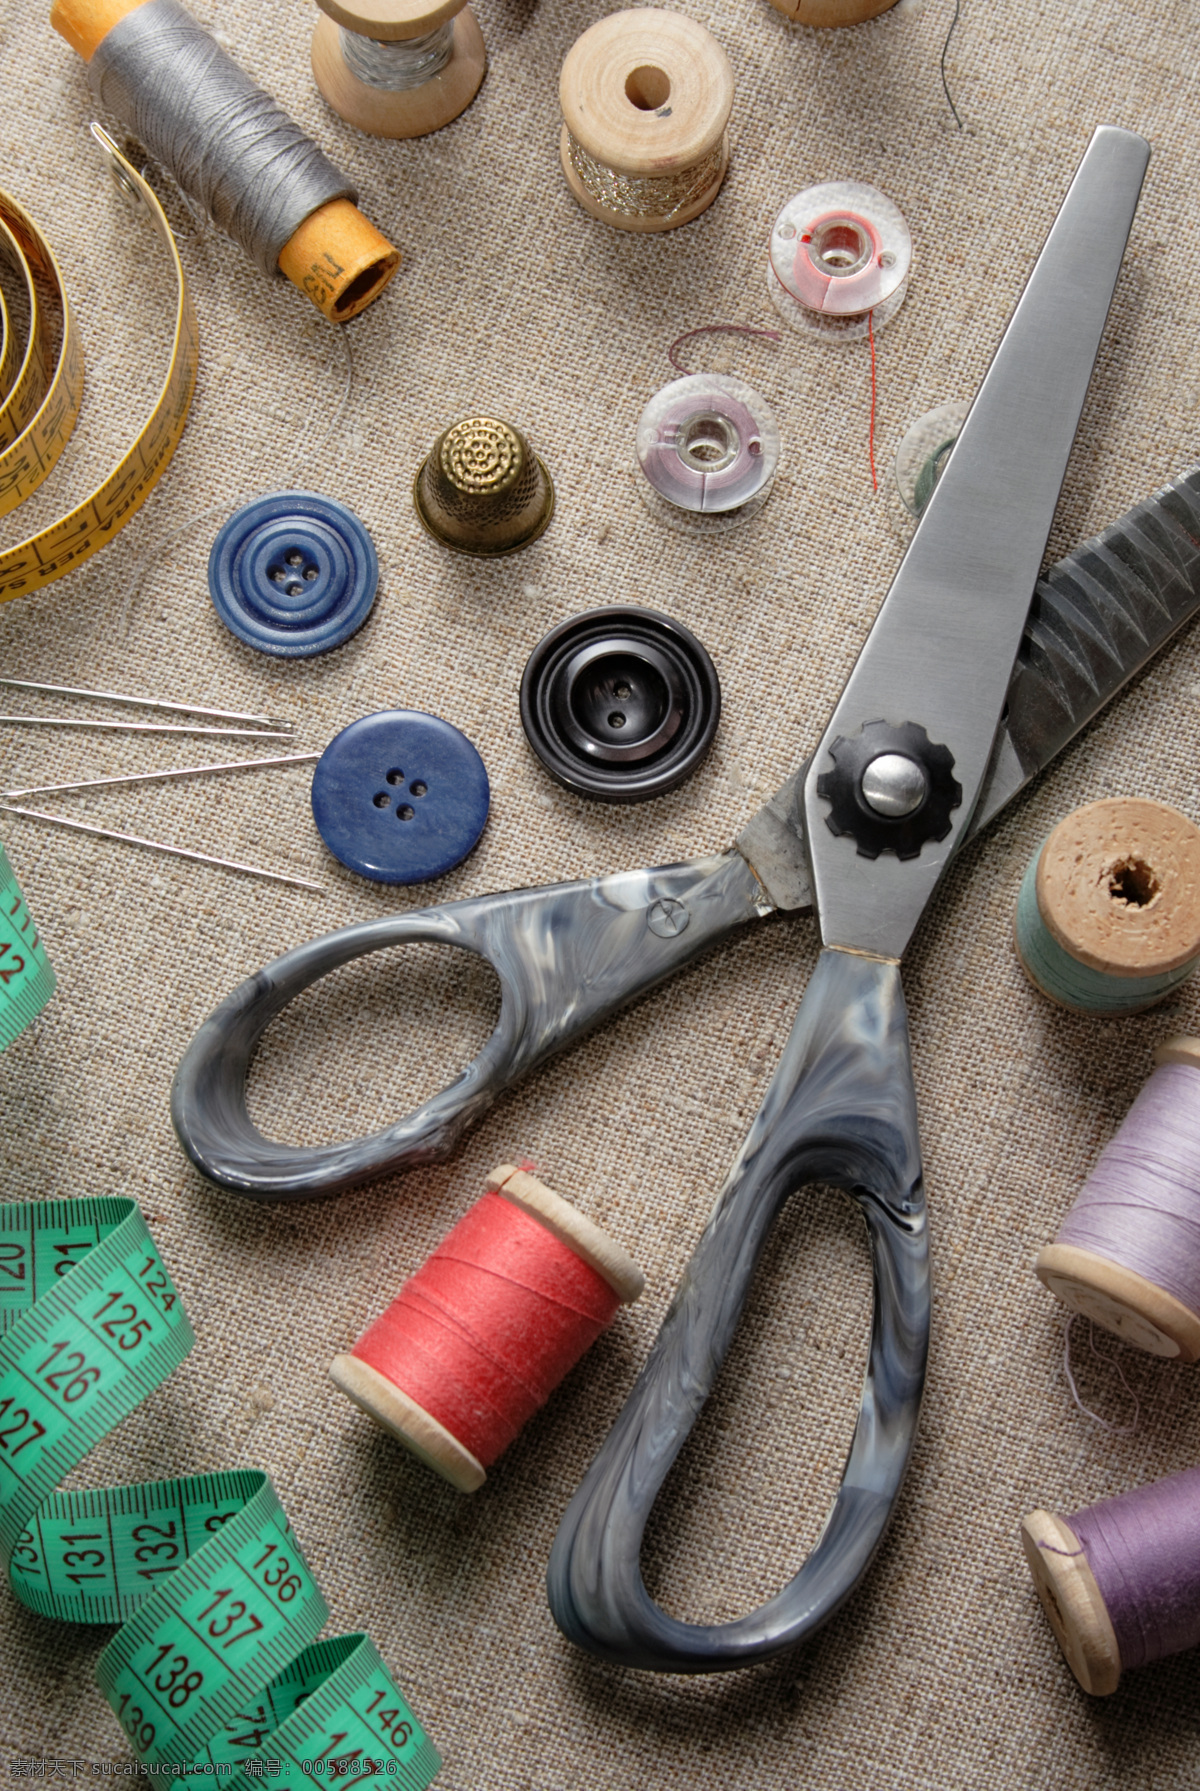 剪刀 软尺 钮扣 针 线 针线 裁缝工具 扣子 生活用品 生活百科